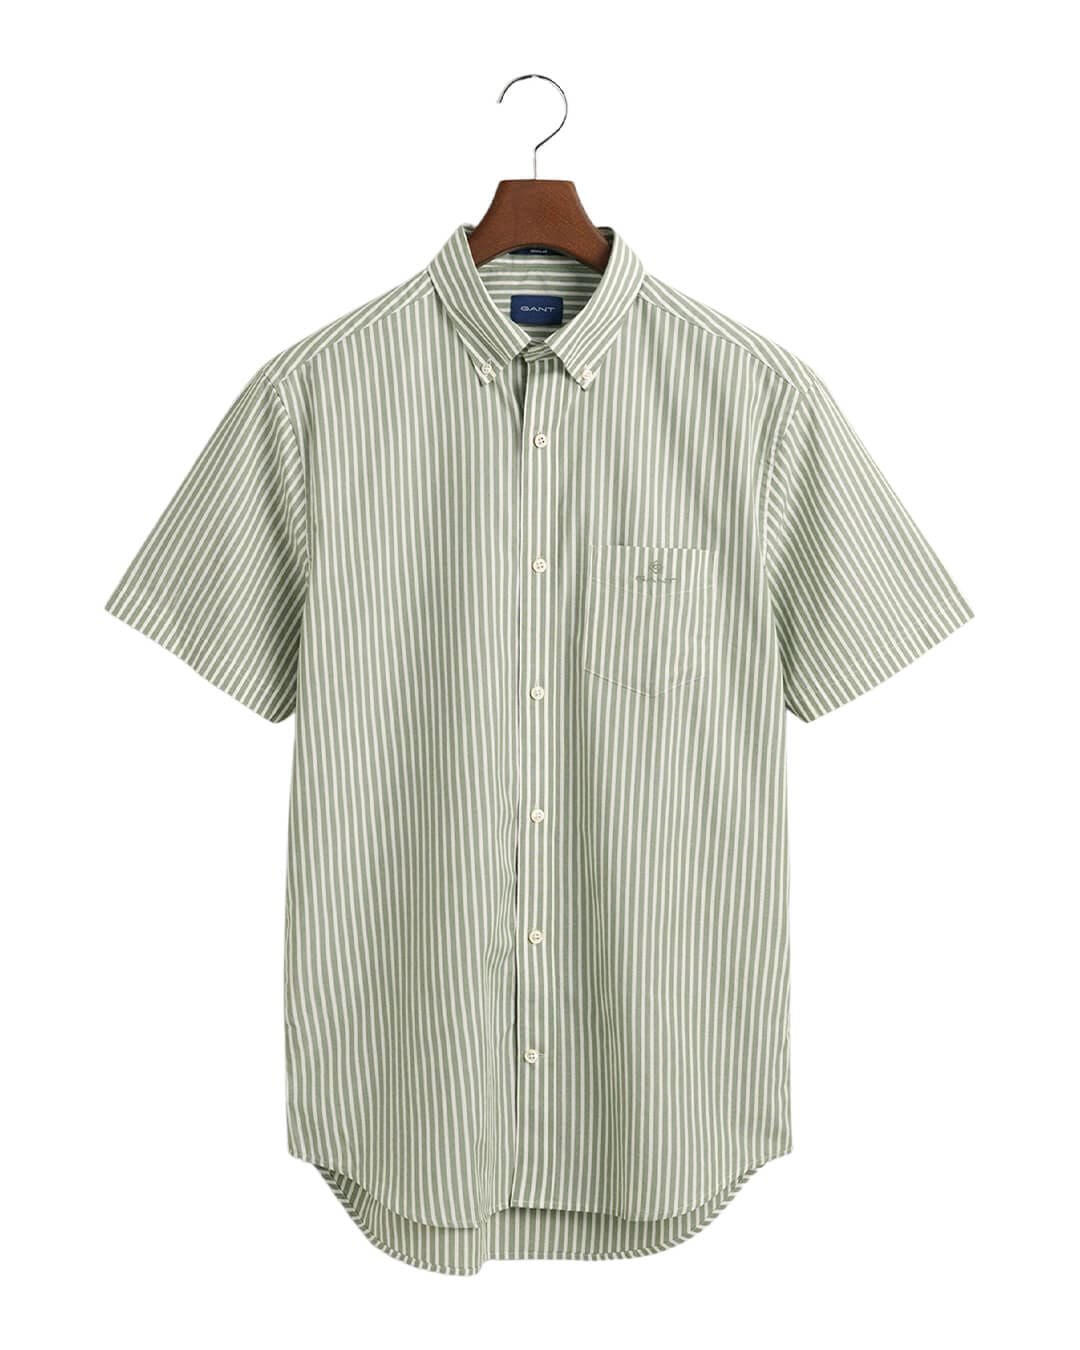 Gant Shirts Gant Green Regular Fit Banker Broadcloth Short Sleeved Shirt